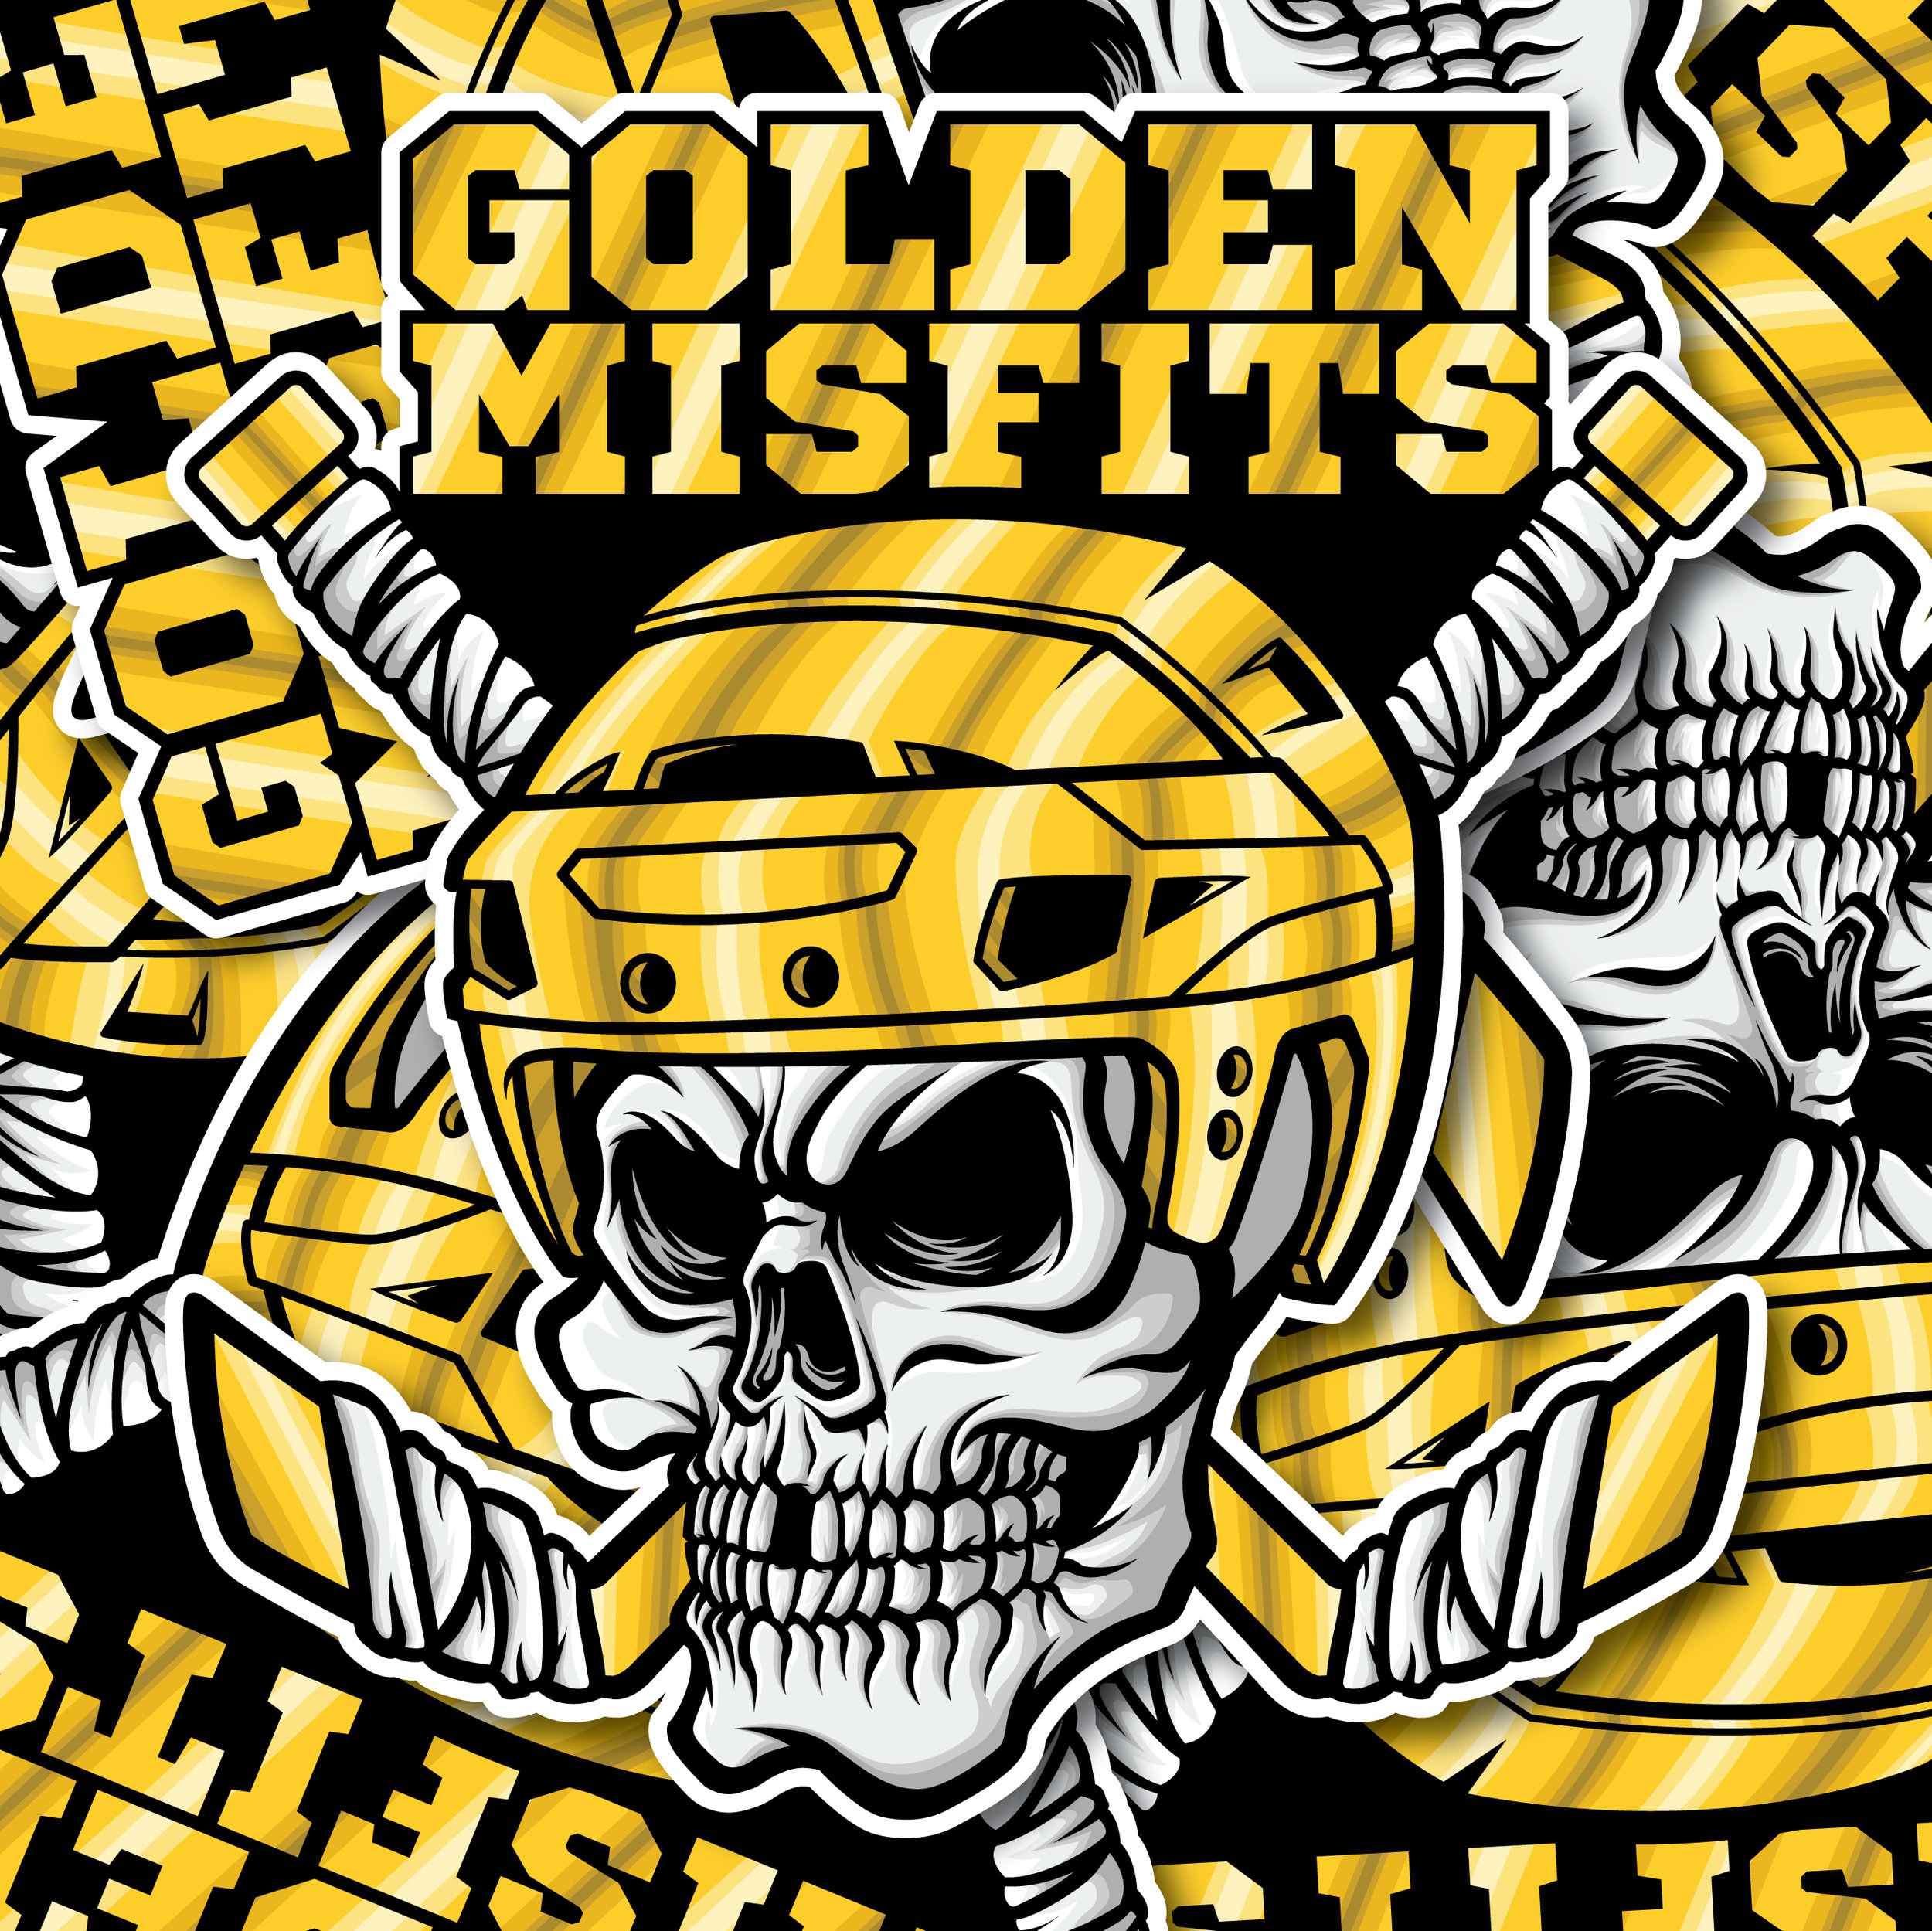 YouTheFan 2507736 12 x 12 in. NHL Vegas Golden Knights 3D Logo Series Wall Art